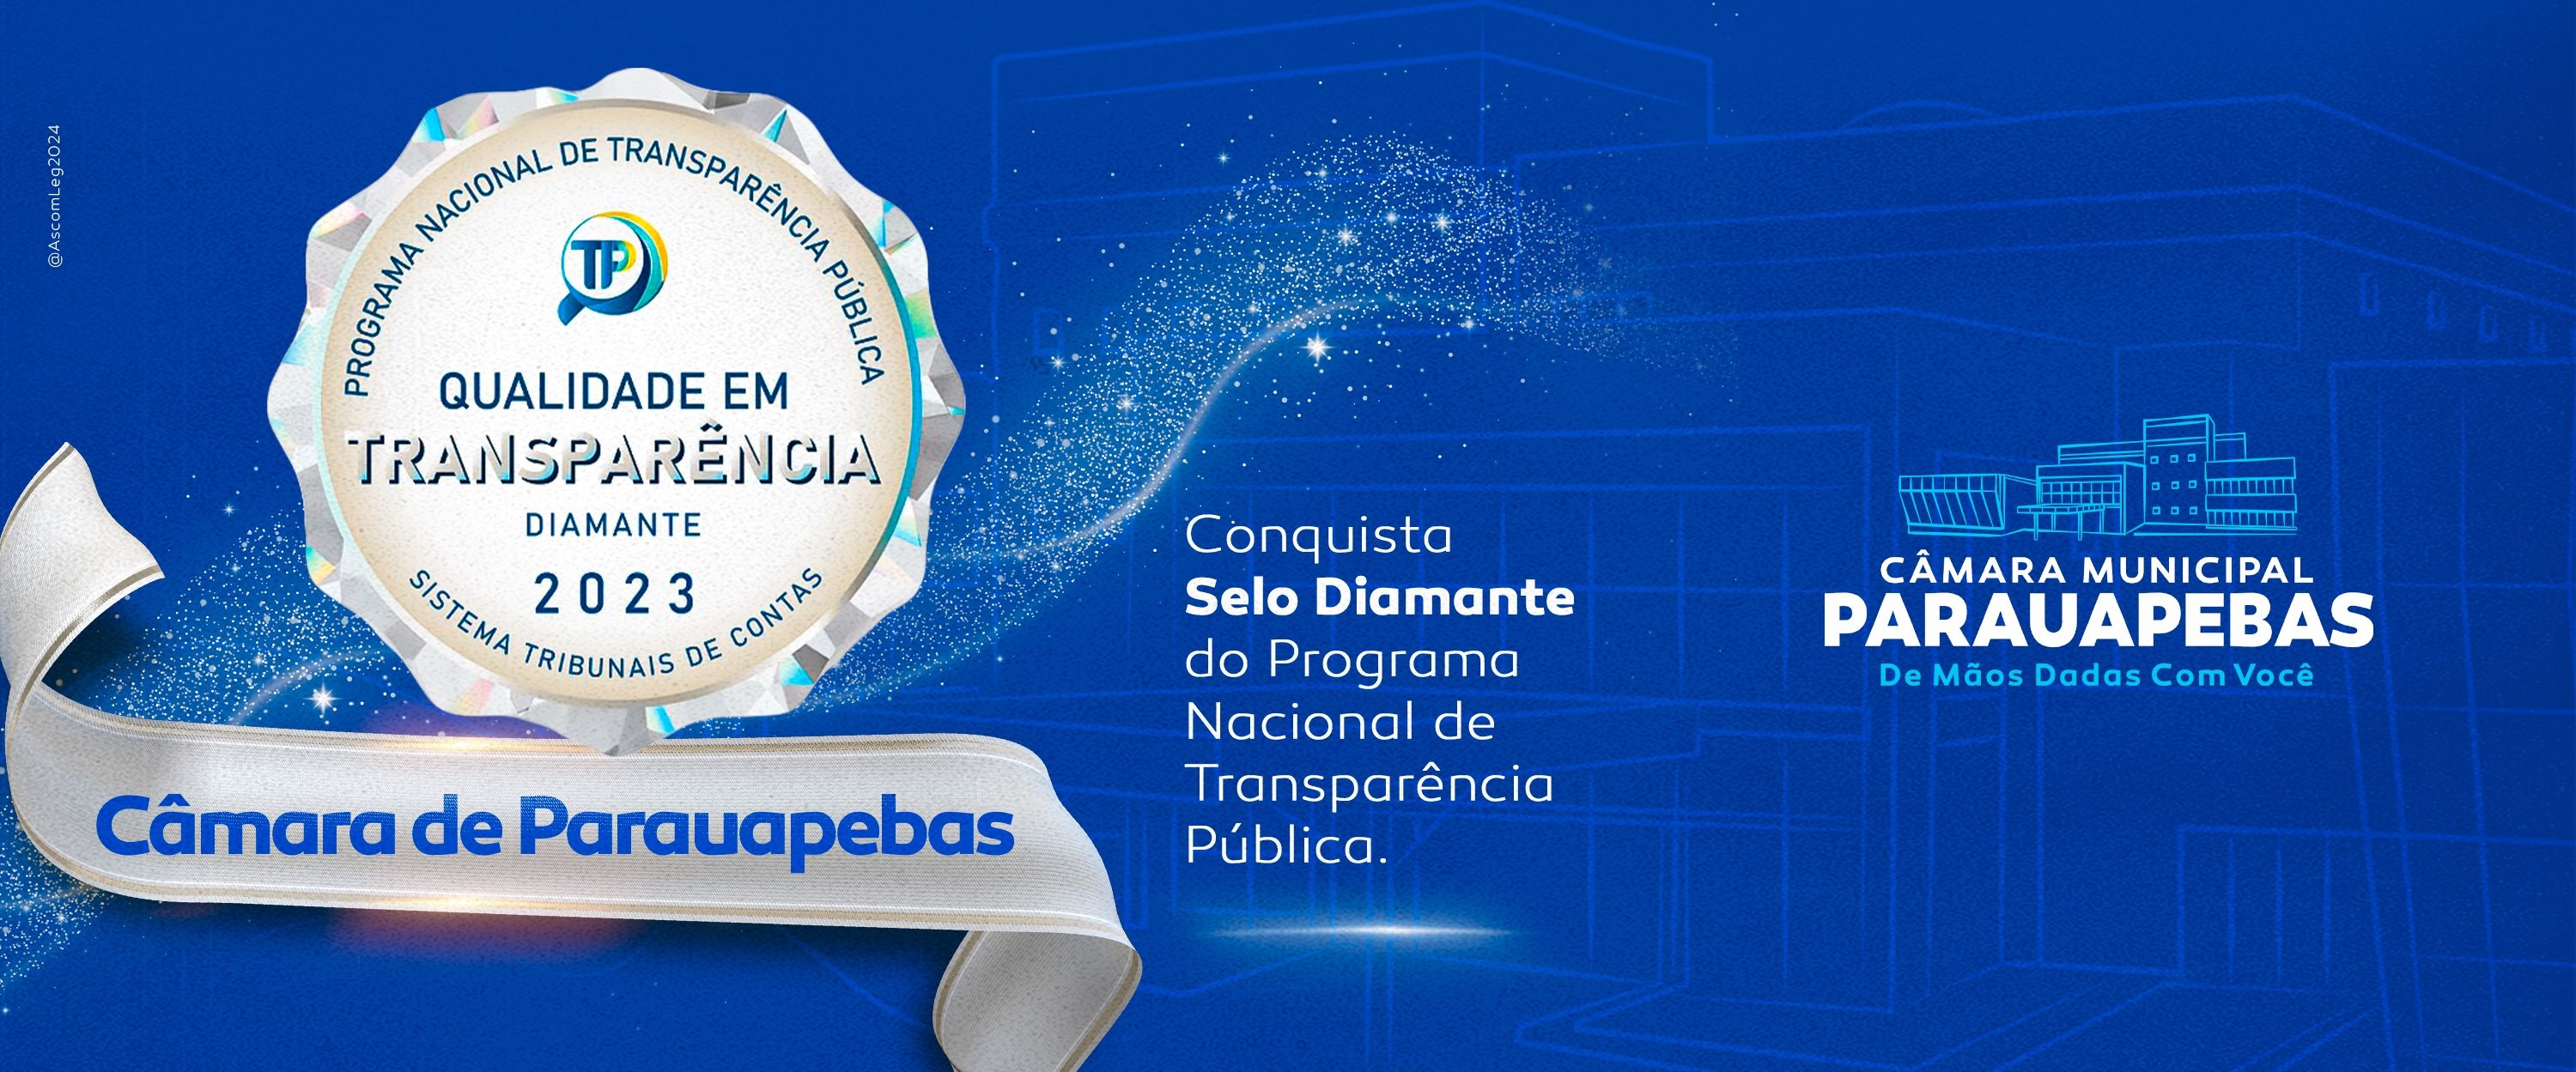 IMais uma vez em destaque: Câmara de Parauapebas recebe selo Diamante no Programa Nacional de Transparência Pública